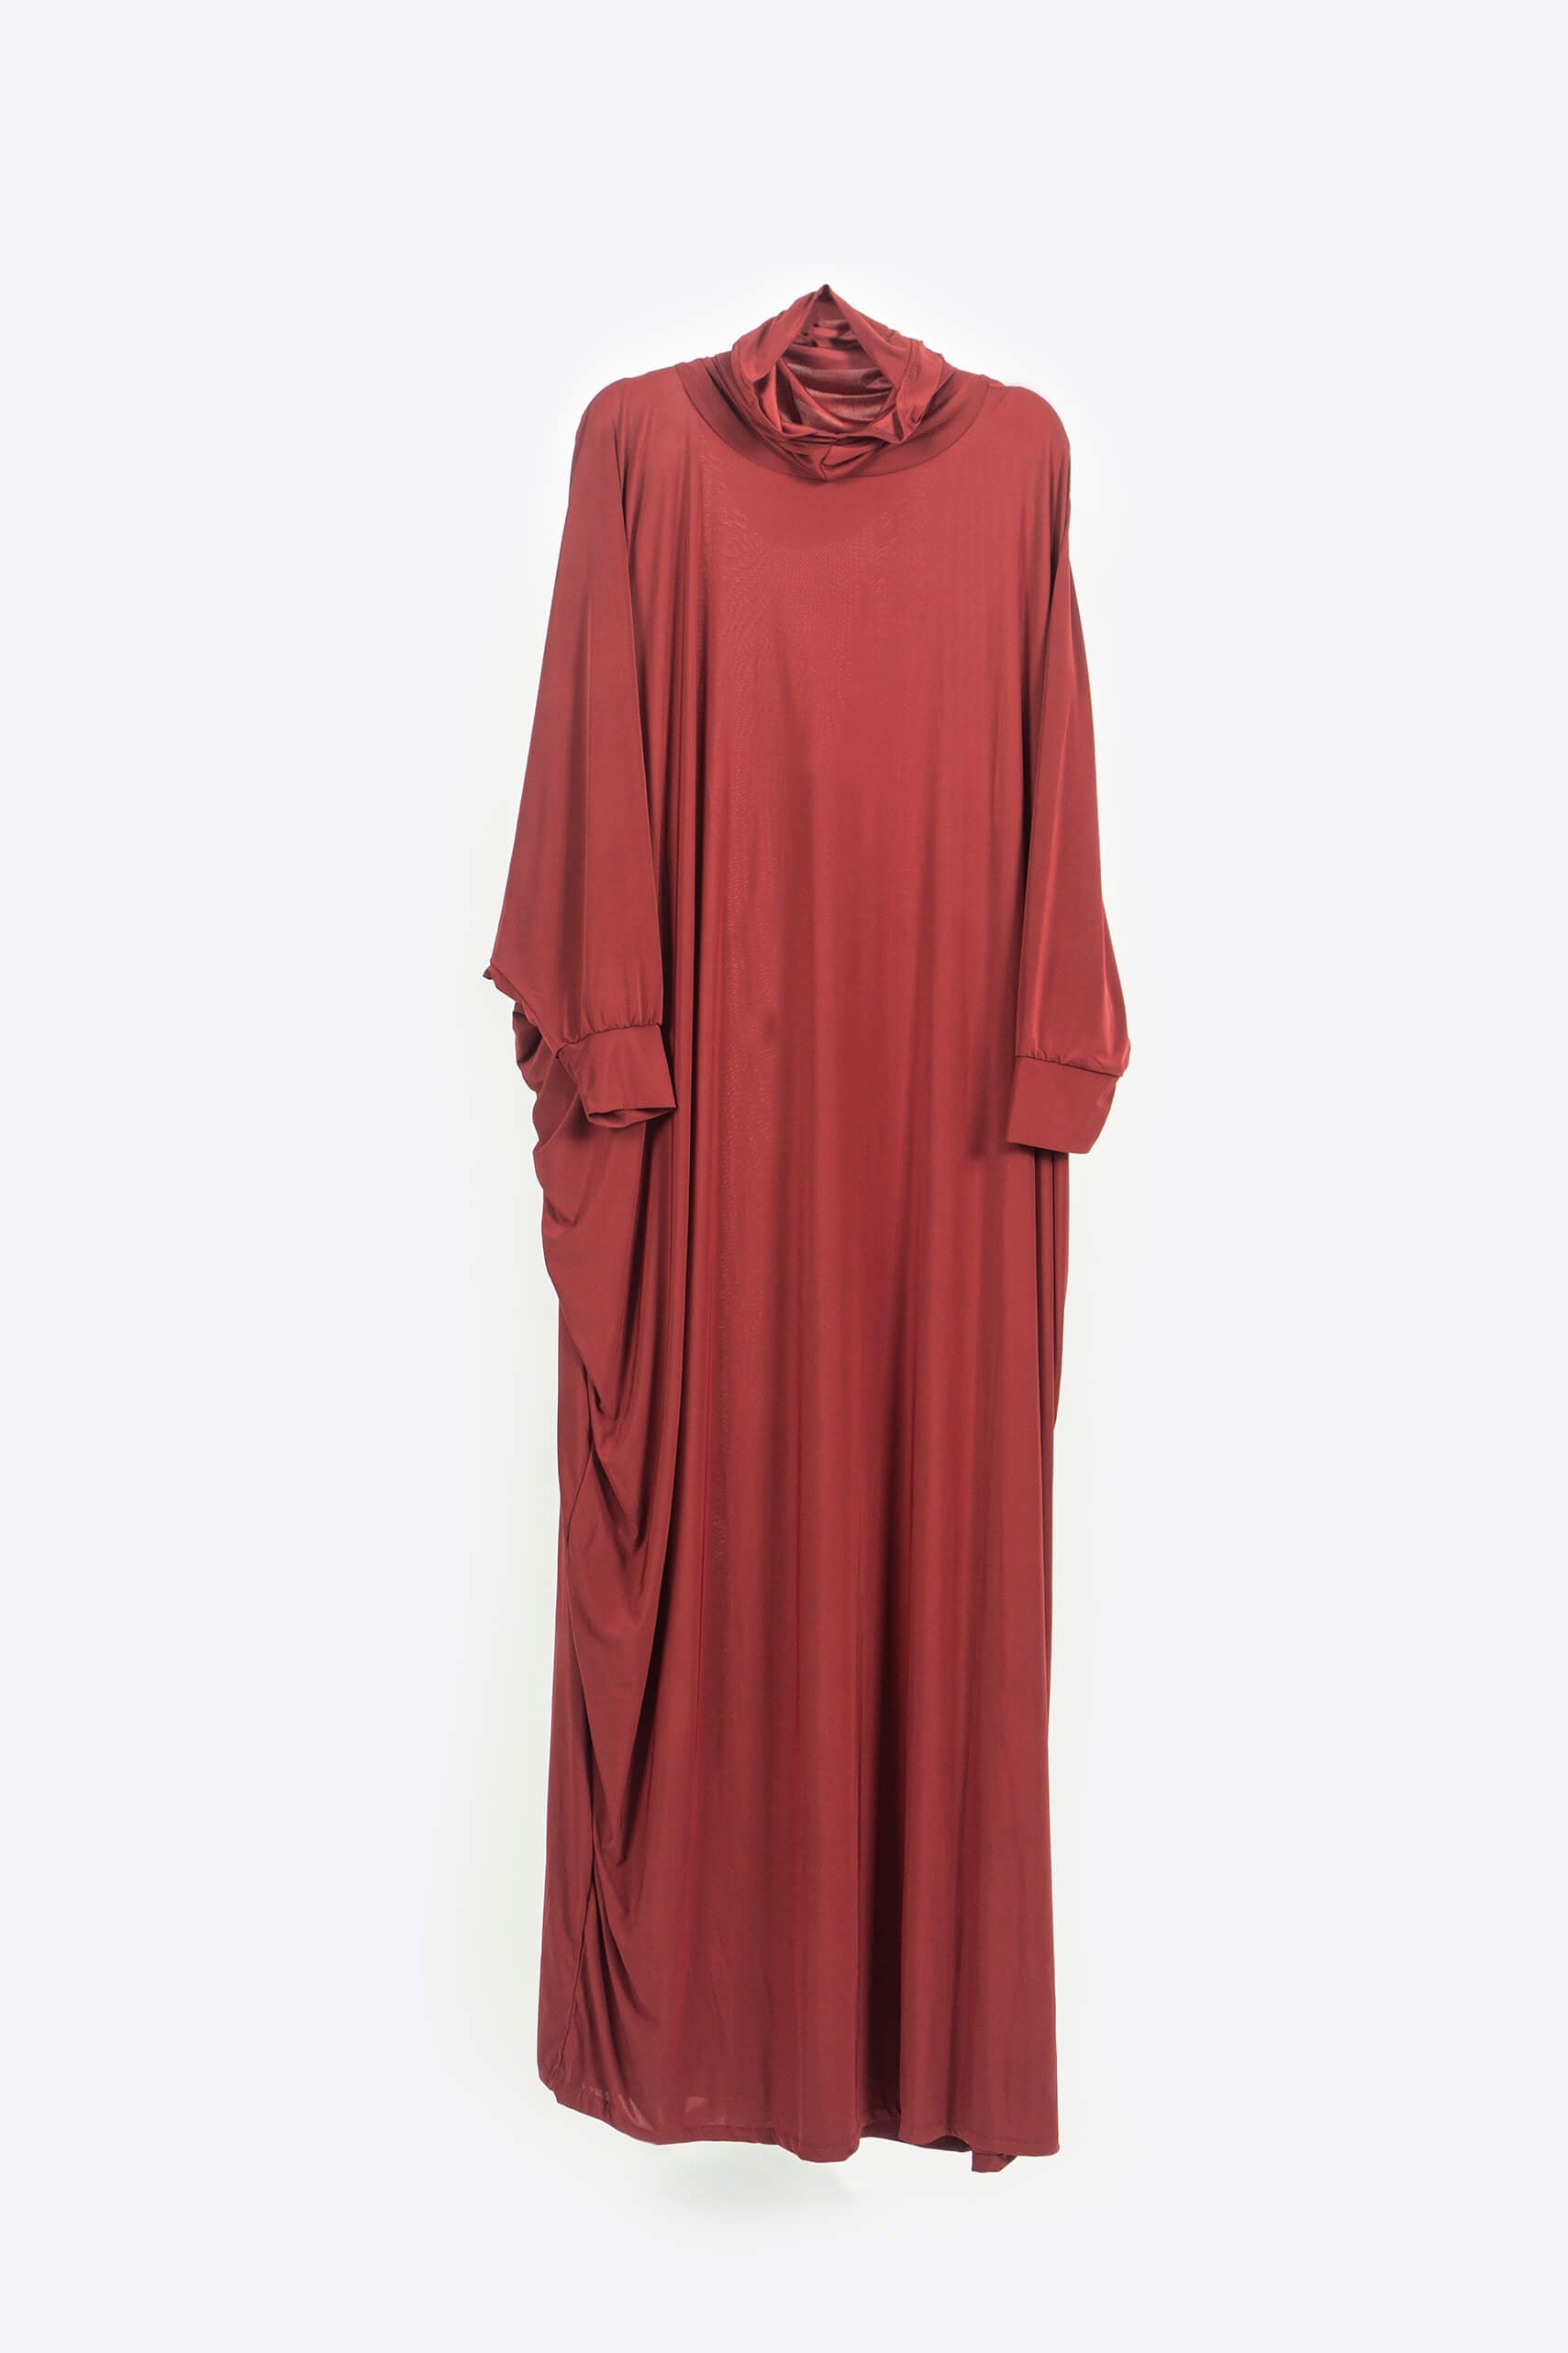 Maroon Prayer Gown - Prayer Gown - Muslim Lifestyle Store